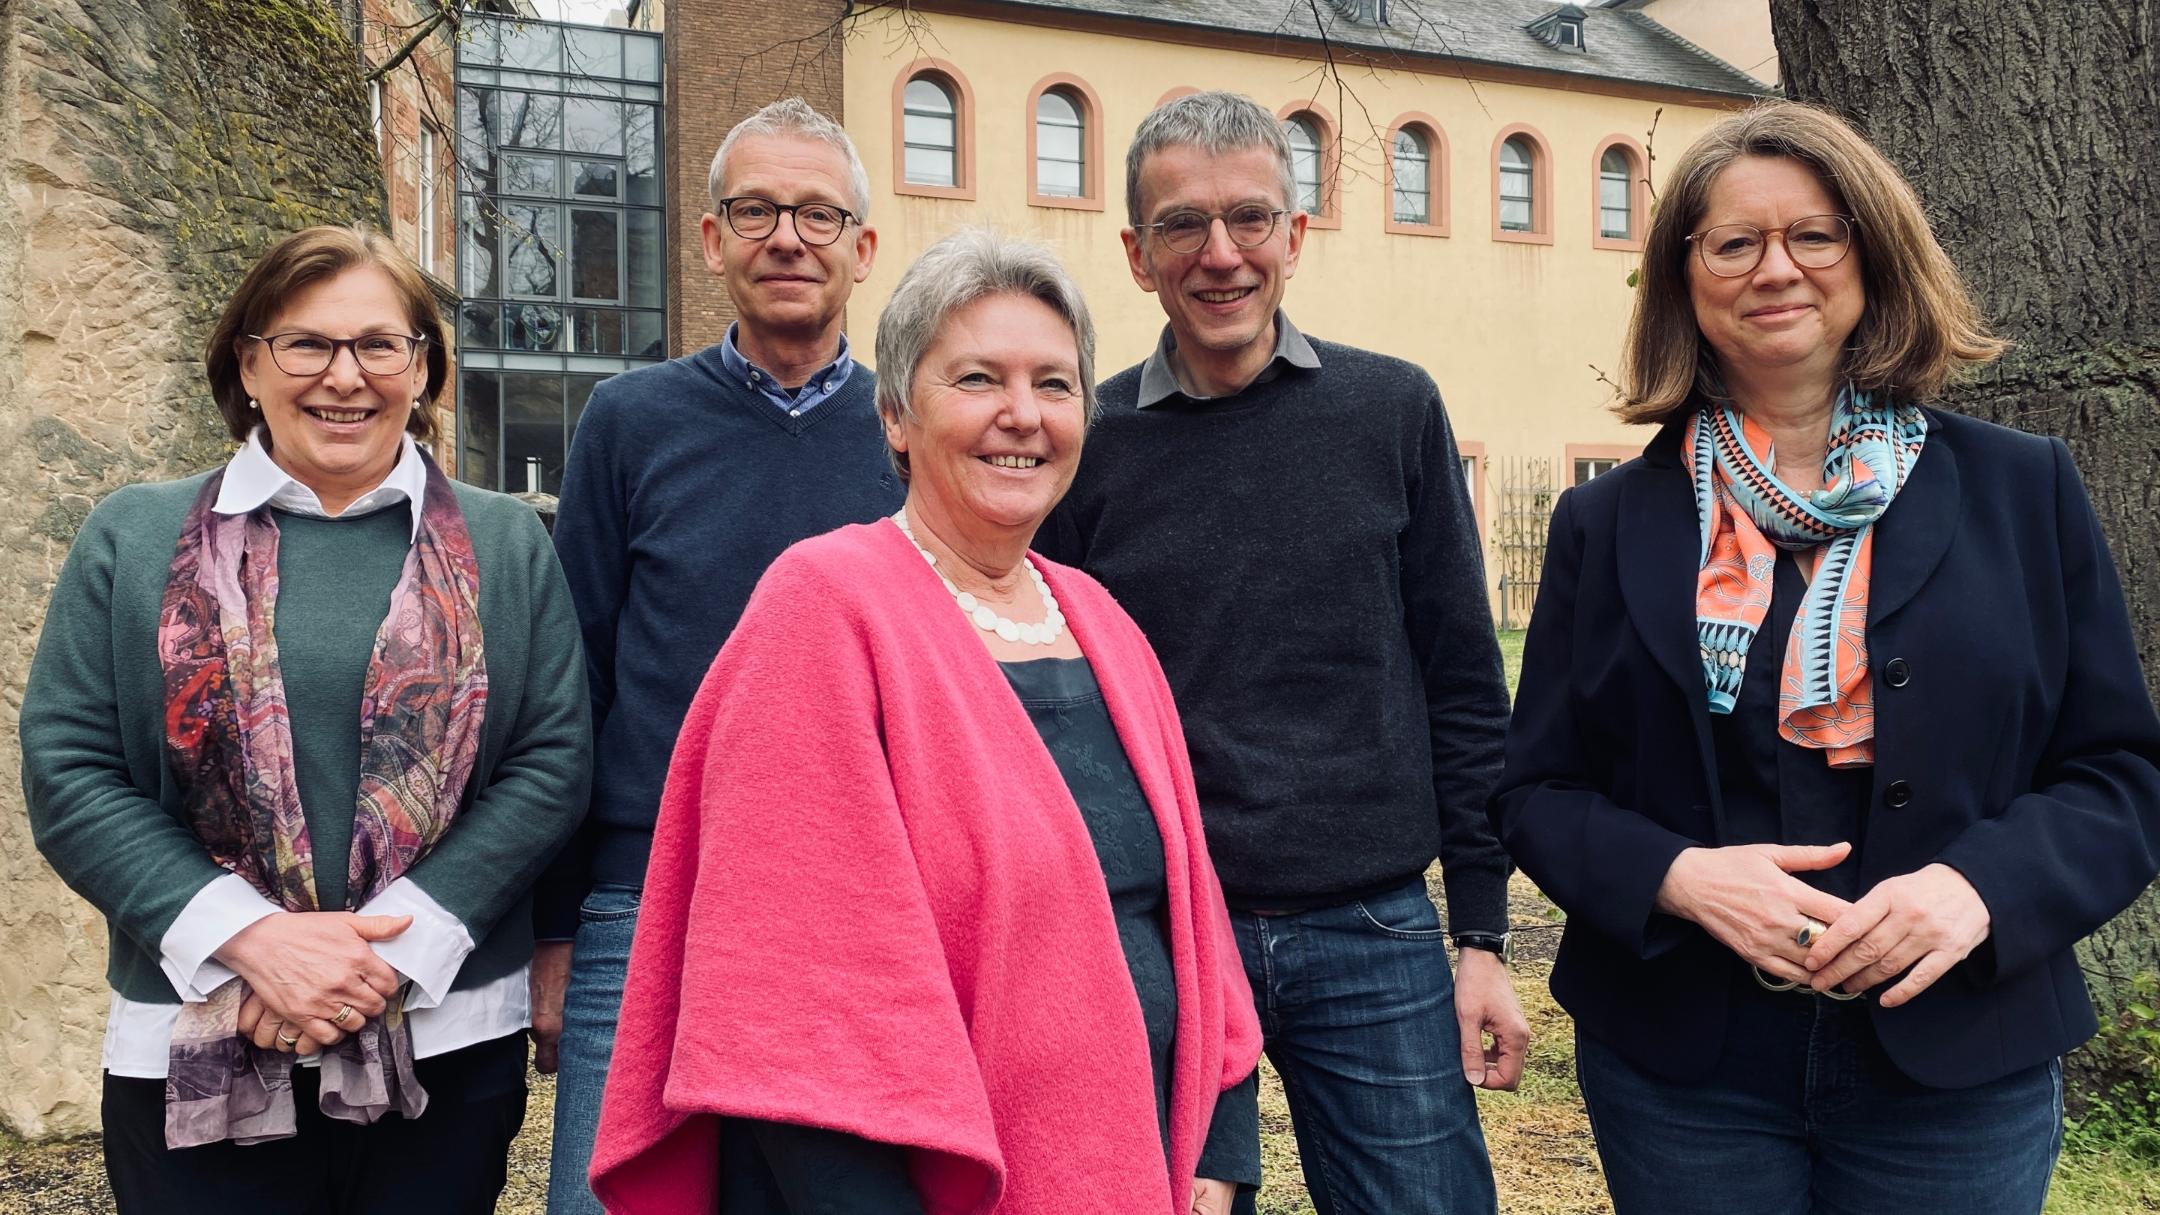 Die vier Mitglieder der Fachgruppe Bestattungsdienst (v.l.n.r.): Michaela Tholl, Jürgen Burkhardt, Marianne Krämer-Birsens und Stefan Nober, zusammen mit Direktorin Mechthild Schabo.